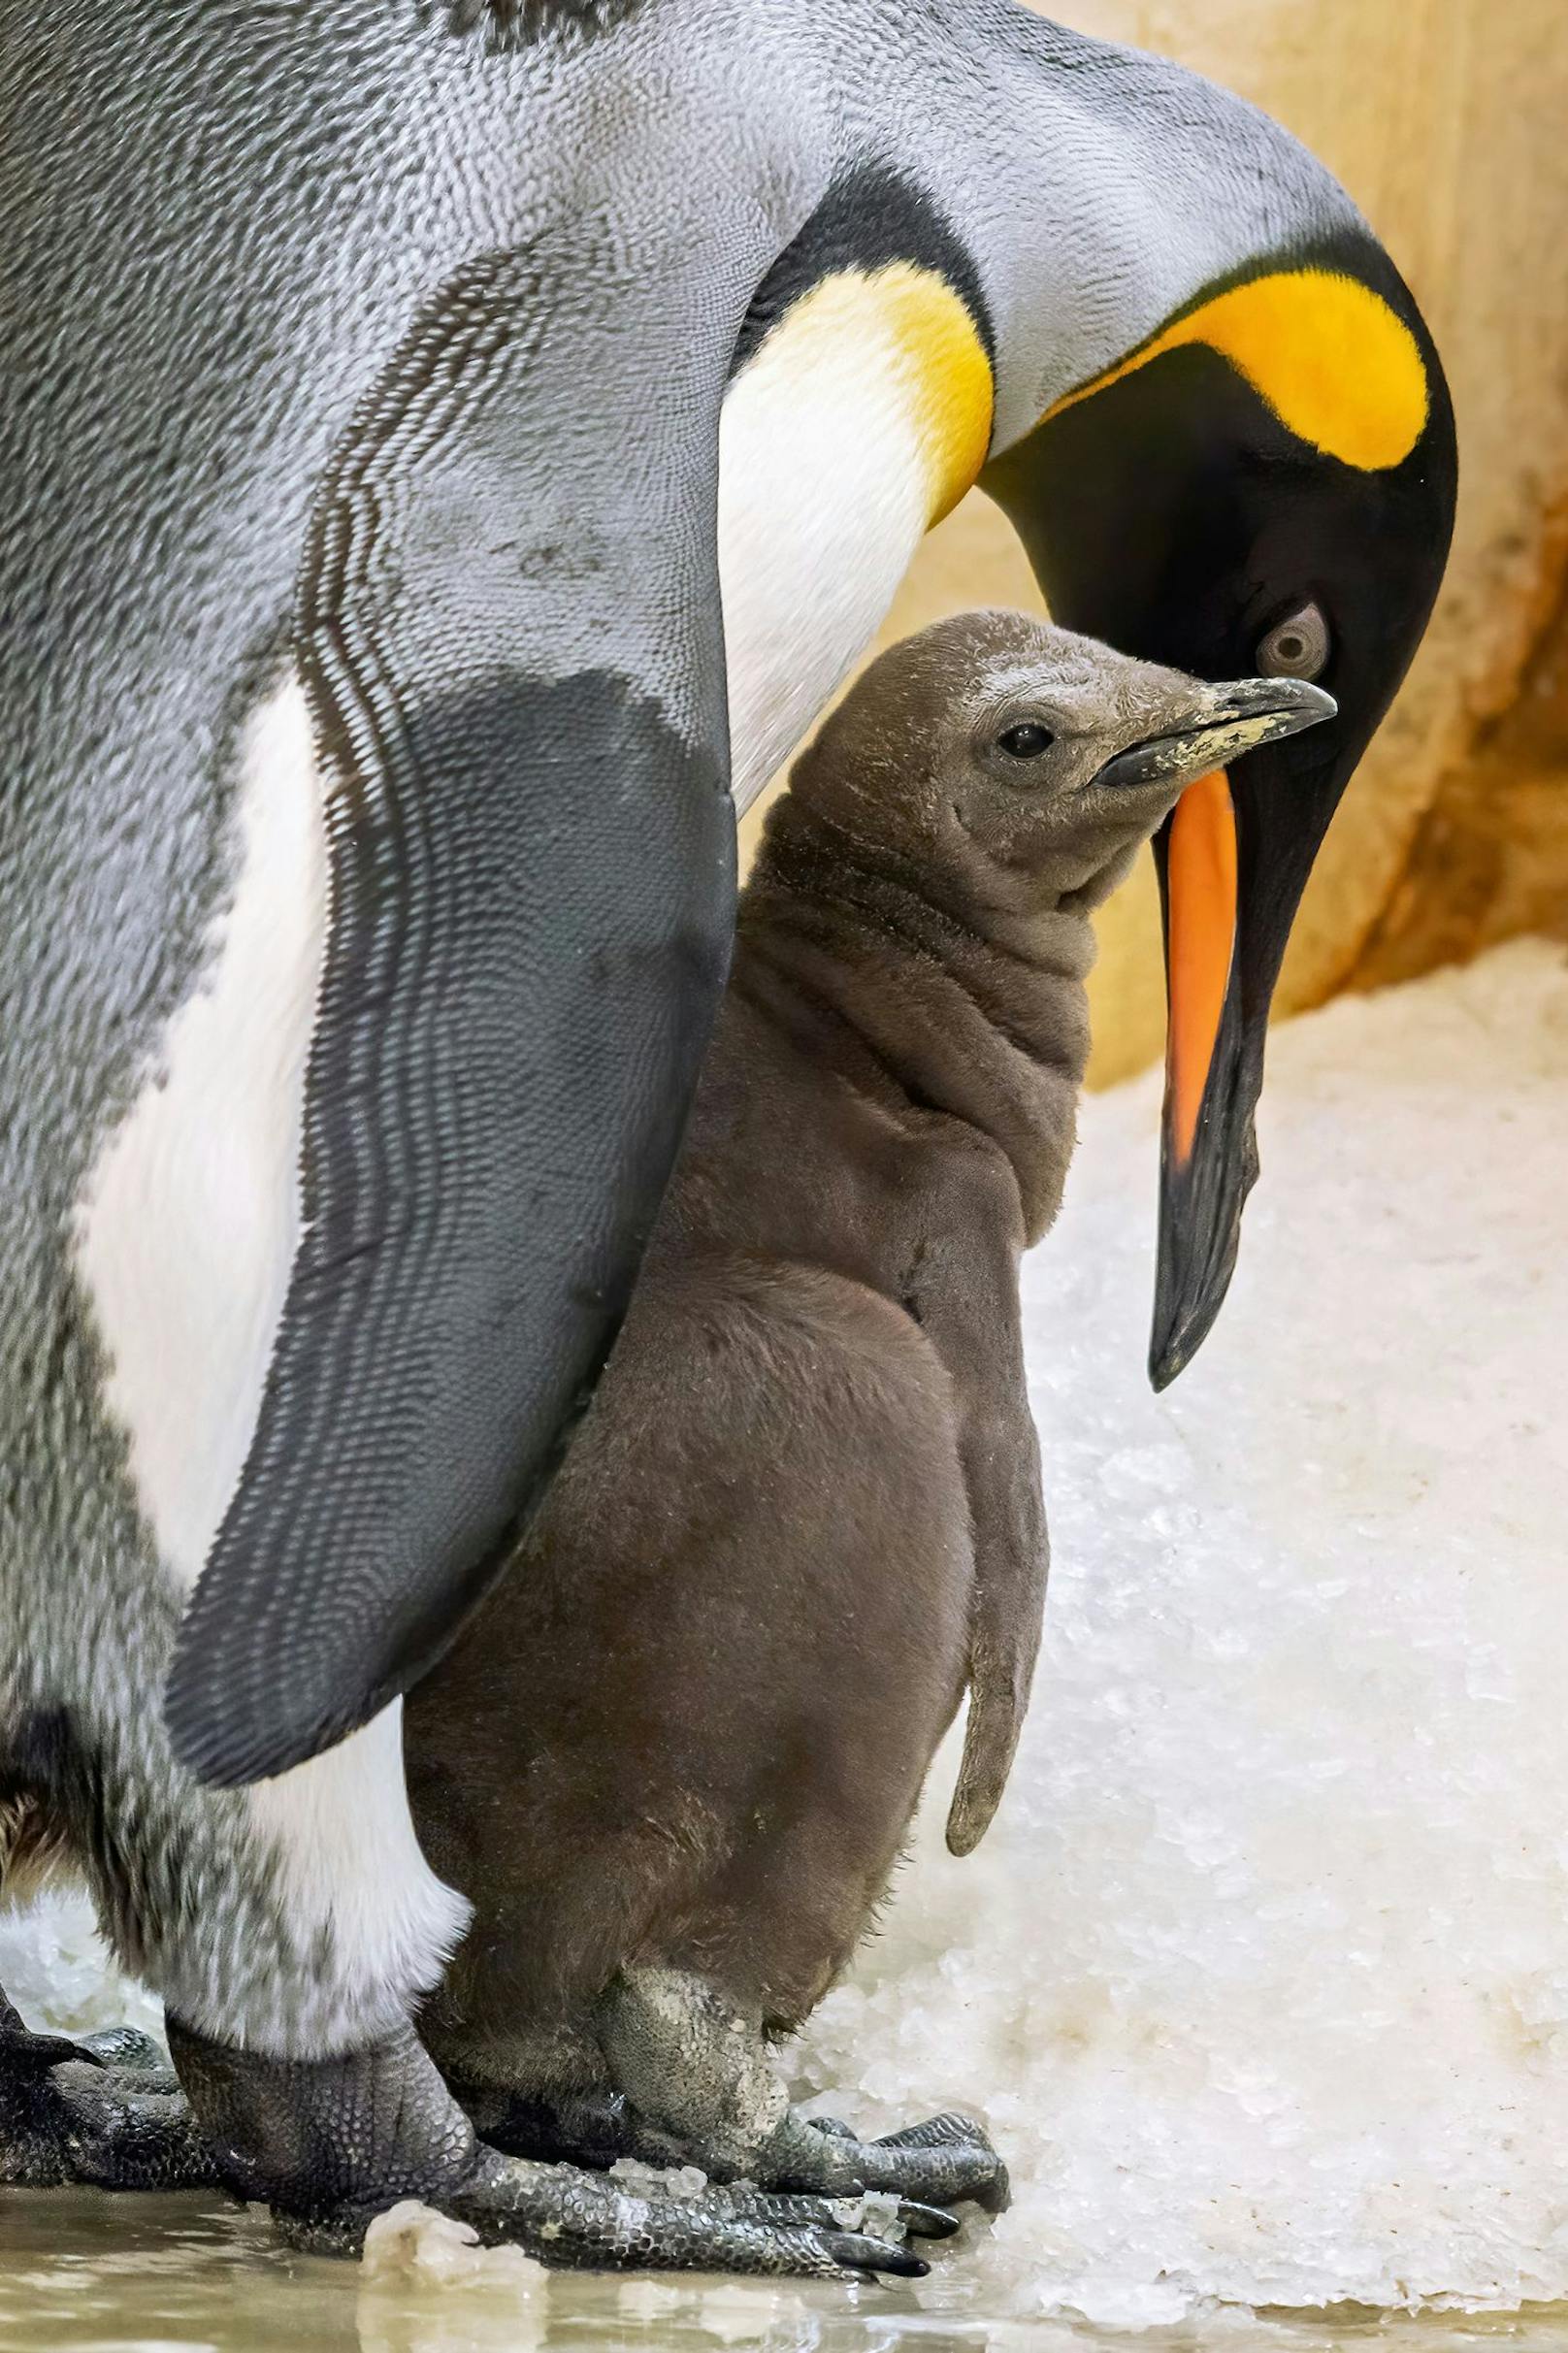 Die Pinguine im Zoo sind wichtige Botschafter für ihre Artgenossen in der Wildbahn, denen Klimawandel und Umweltverschmutzung zu schaffen machen.